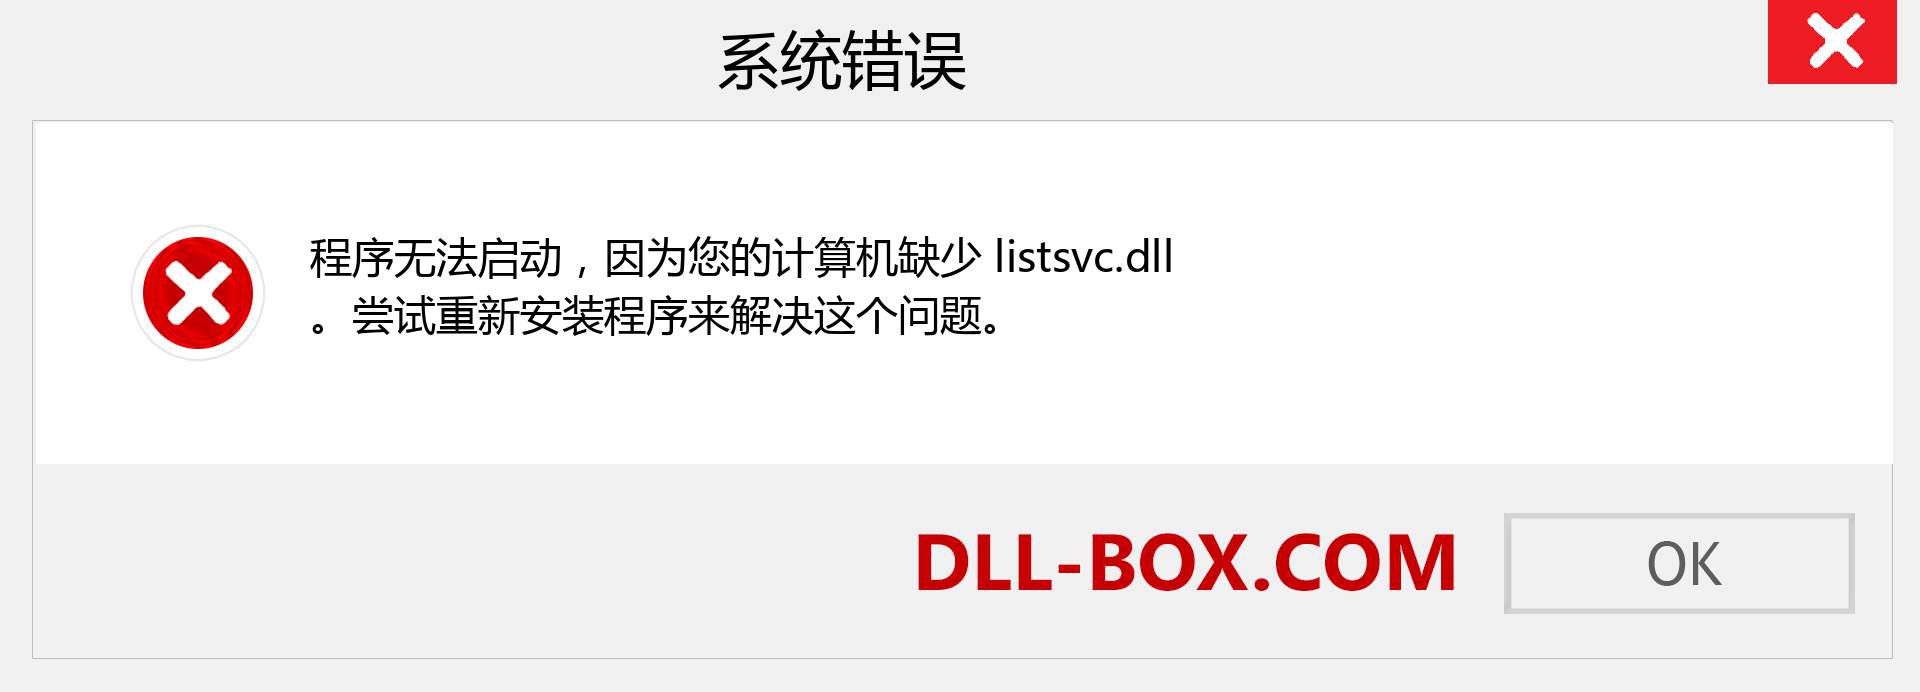 listsvc.dll 文件丢失？。 适用于 Windows 7、8、10 的下载 - 修复 Windows、照片、图像上的 listsvc dll 丢失错误